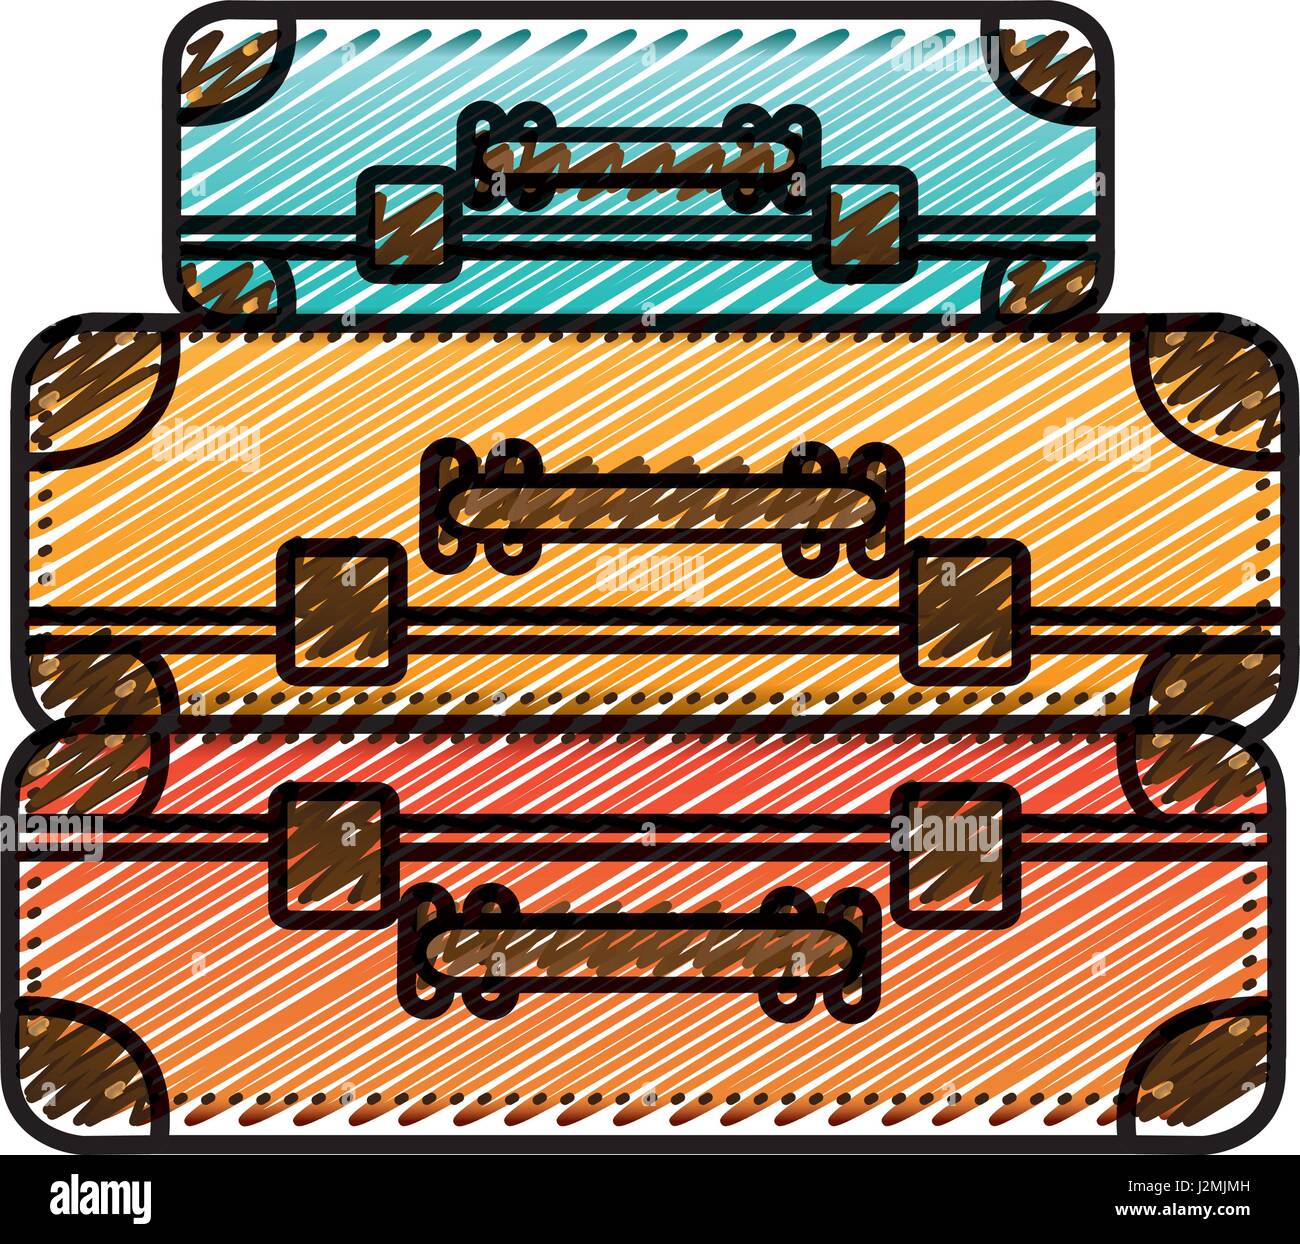 Dessin au crayon de couleur d'ossature avec set de valises mis en plusieurs couleurs Illustration de Vecteur